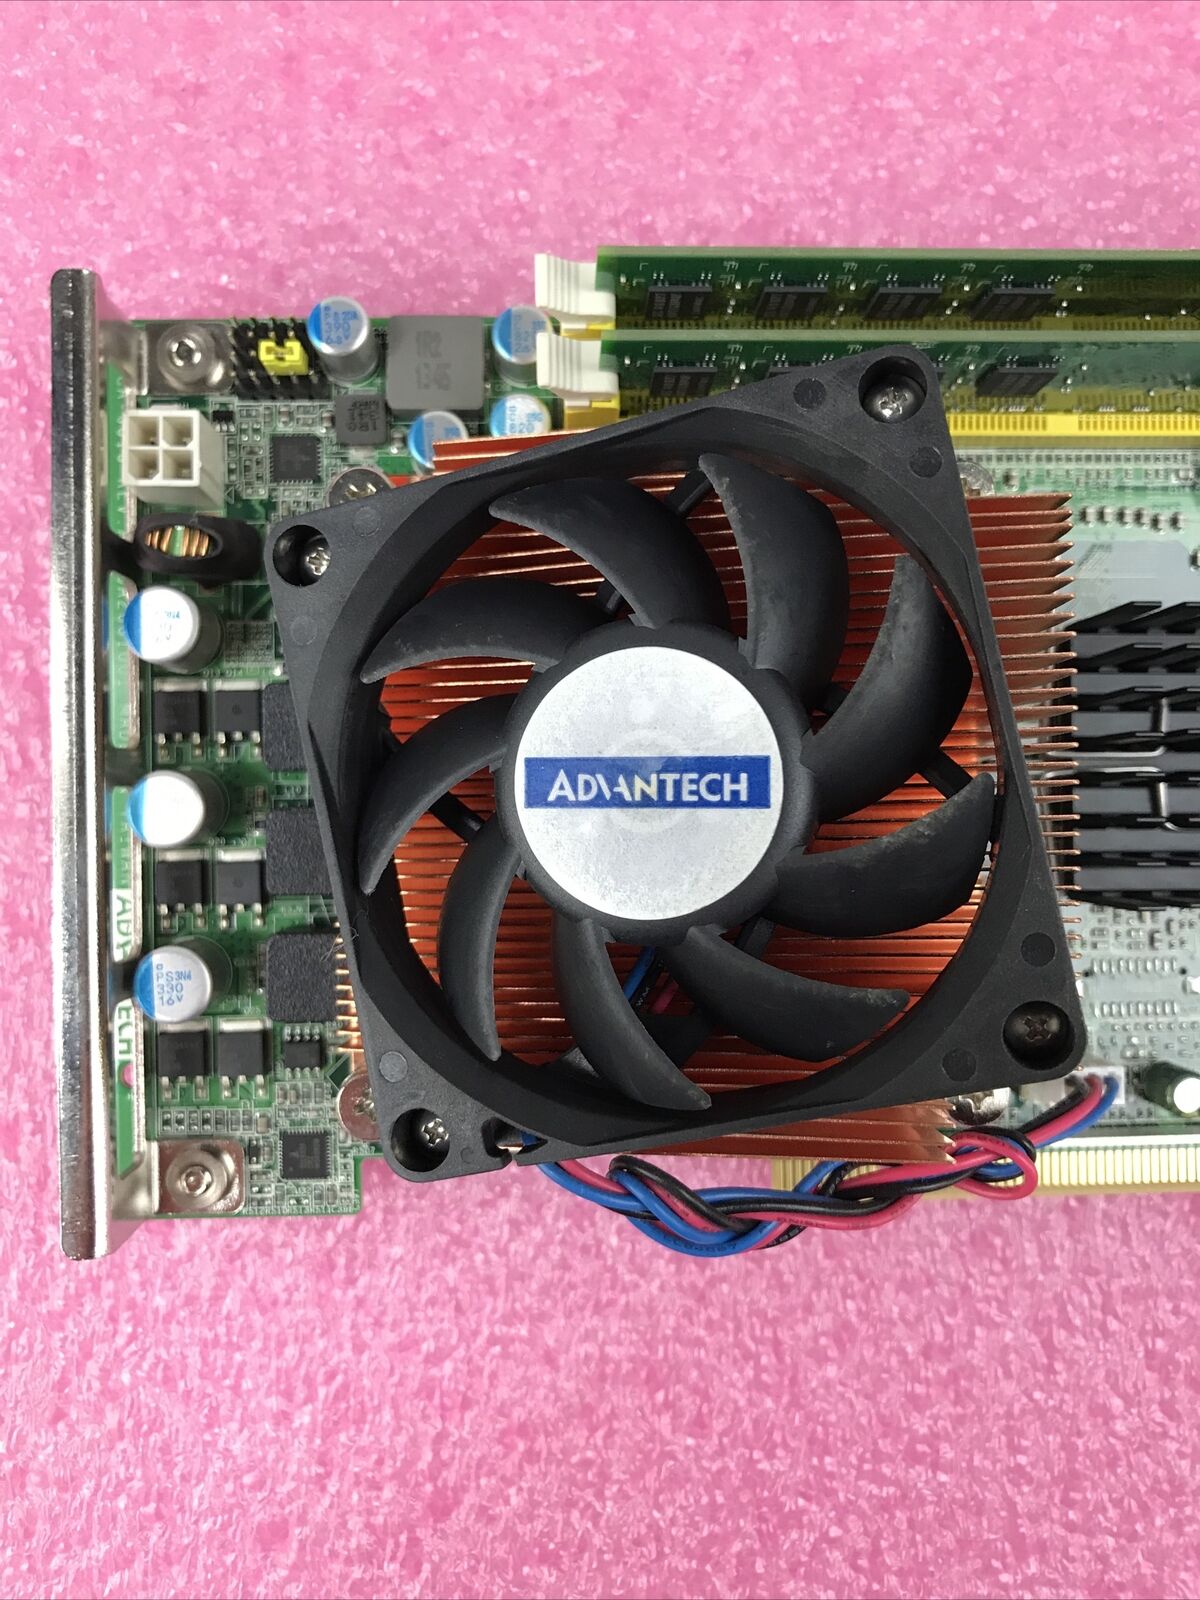 Advantech PCA-6010 Motherboard Core 2 Duo E7400 2.80GHz 3GB RAM